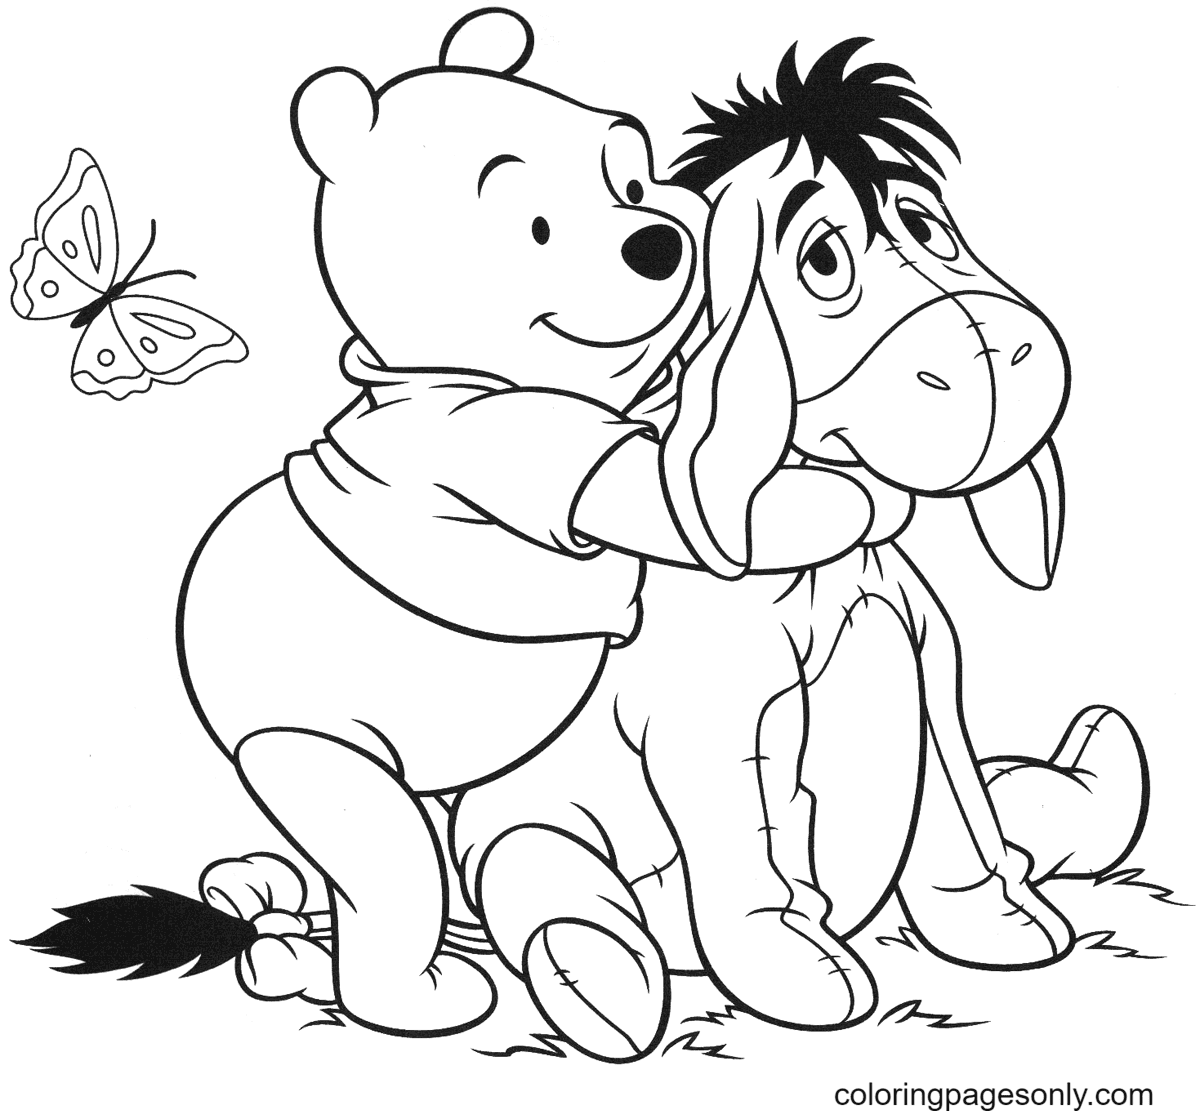 Pooh Hugs Eeyore Coloring Pages